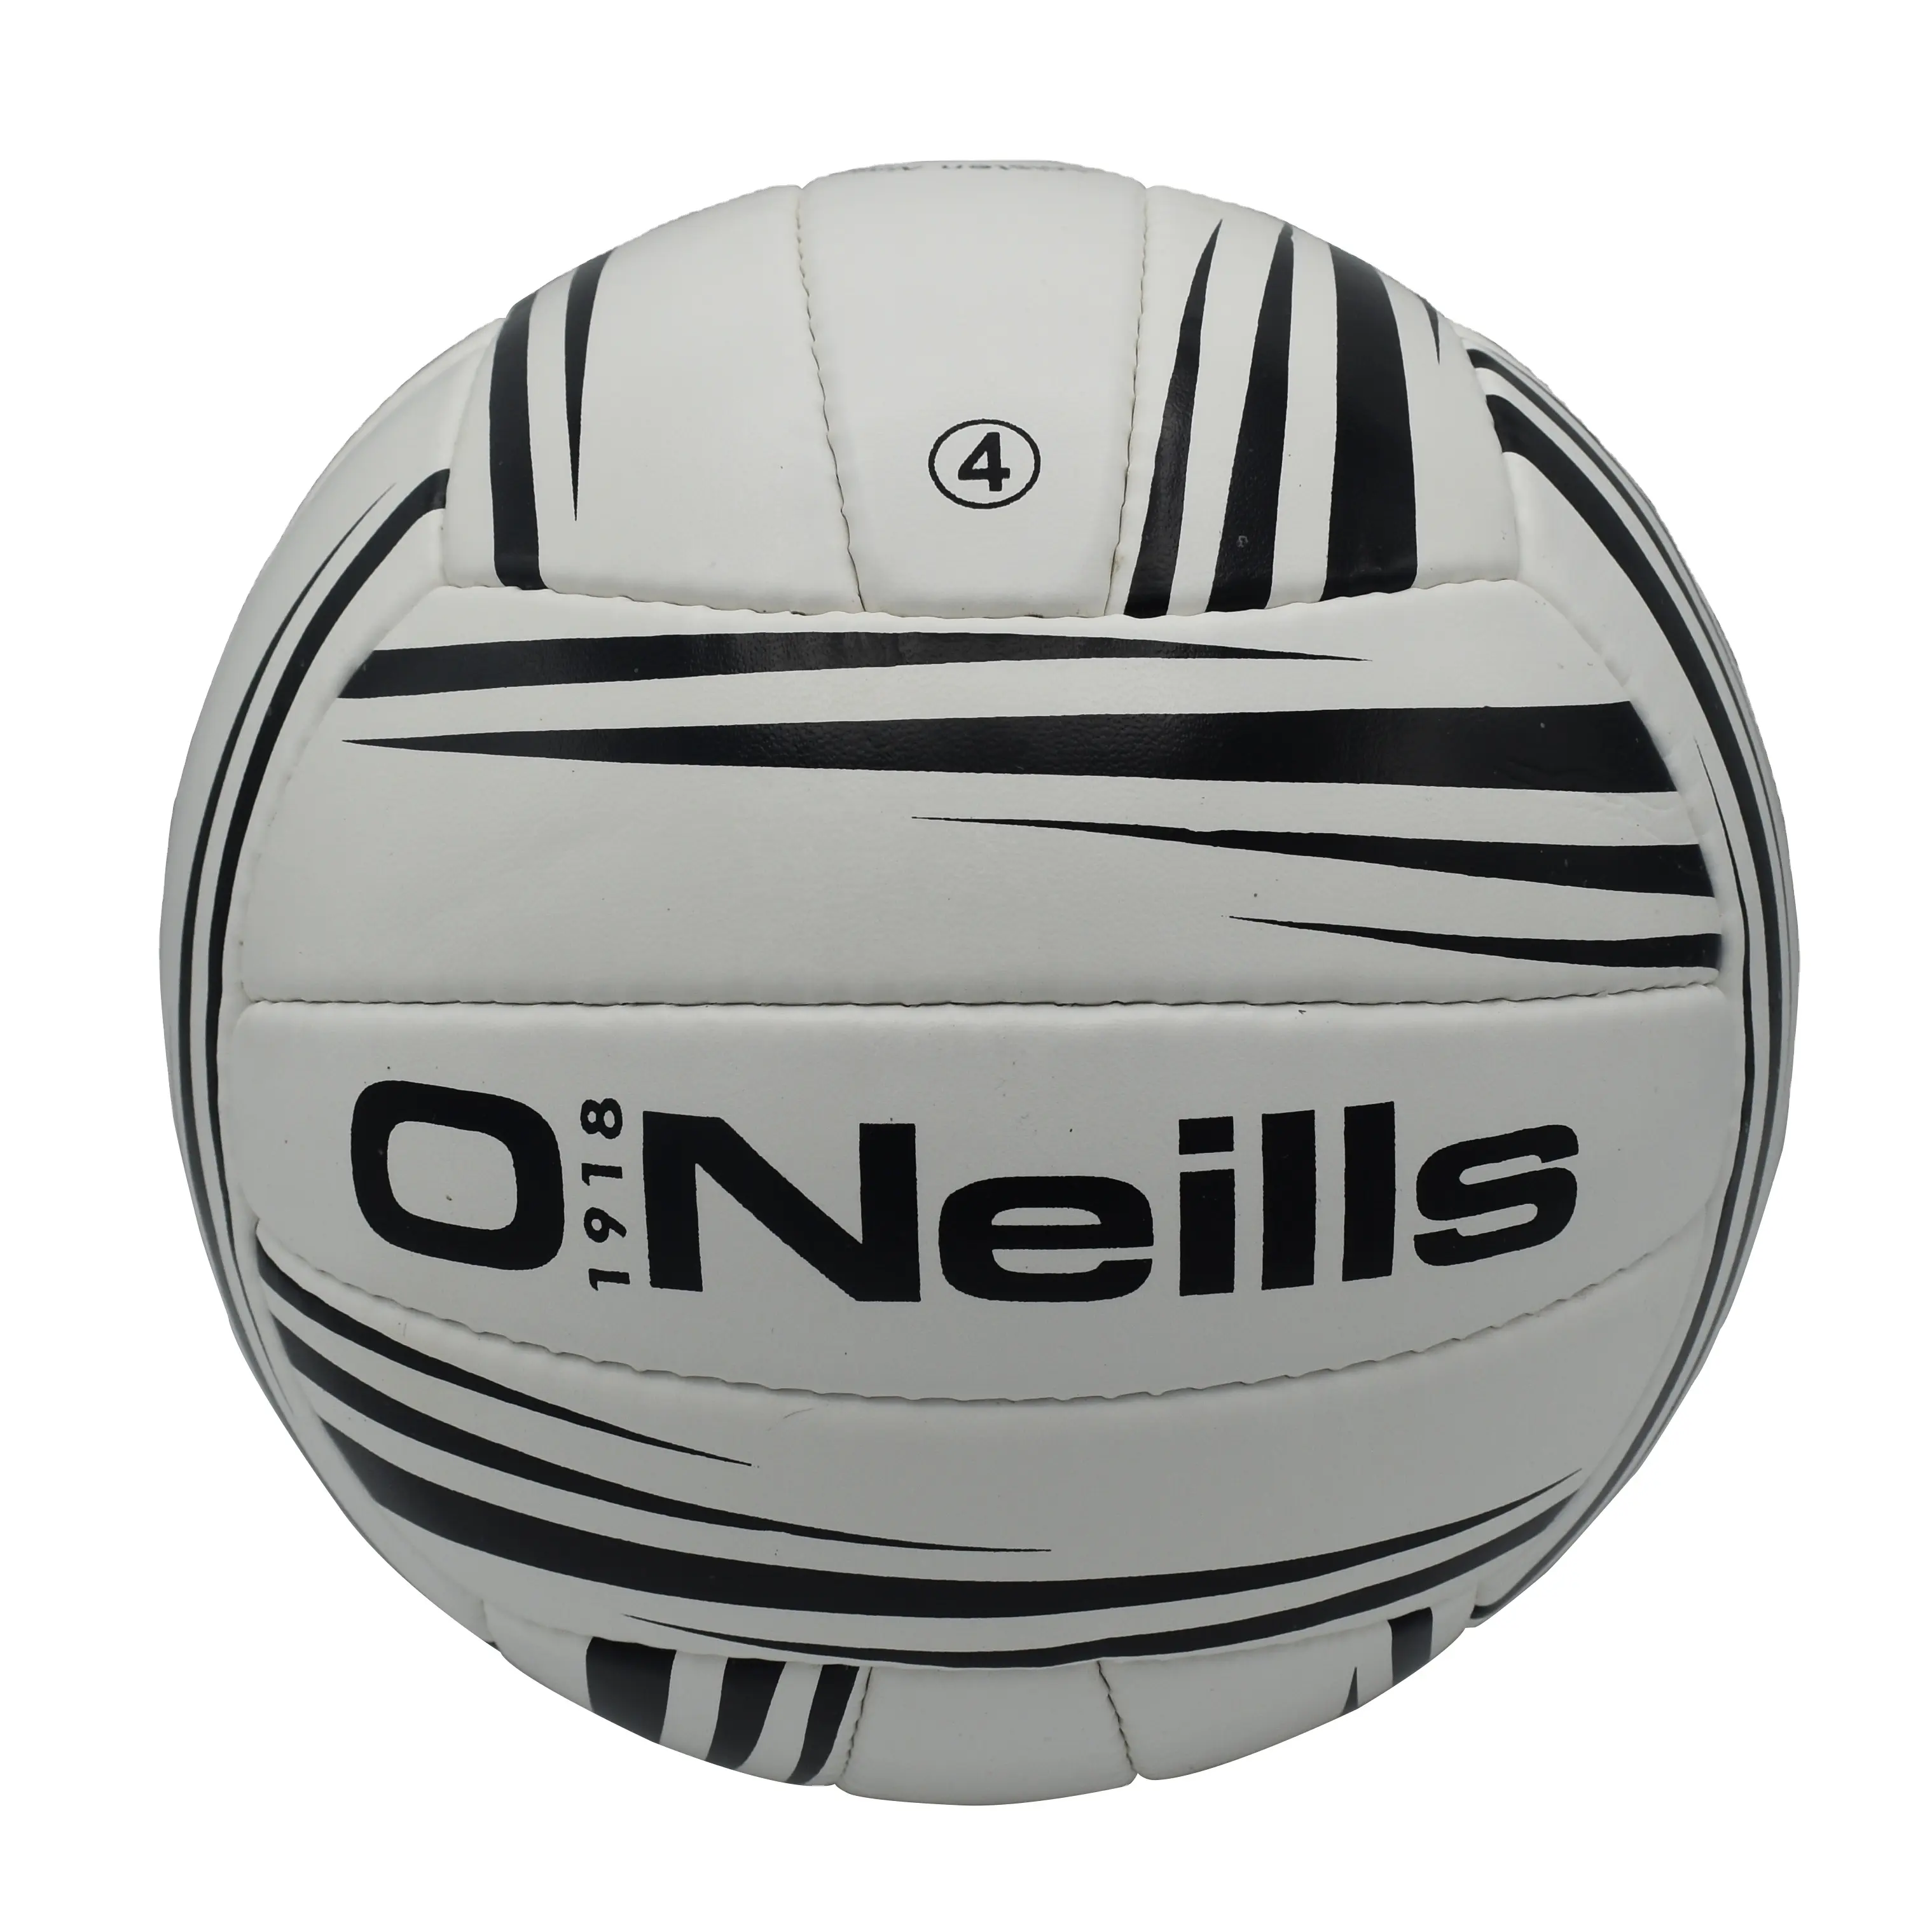 Allenatore gaelico personalizzato Football GAA personalizza Logo Club stemma misura personalizzata 4